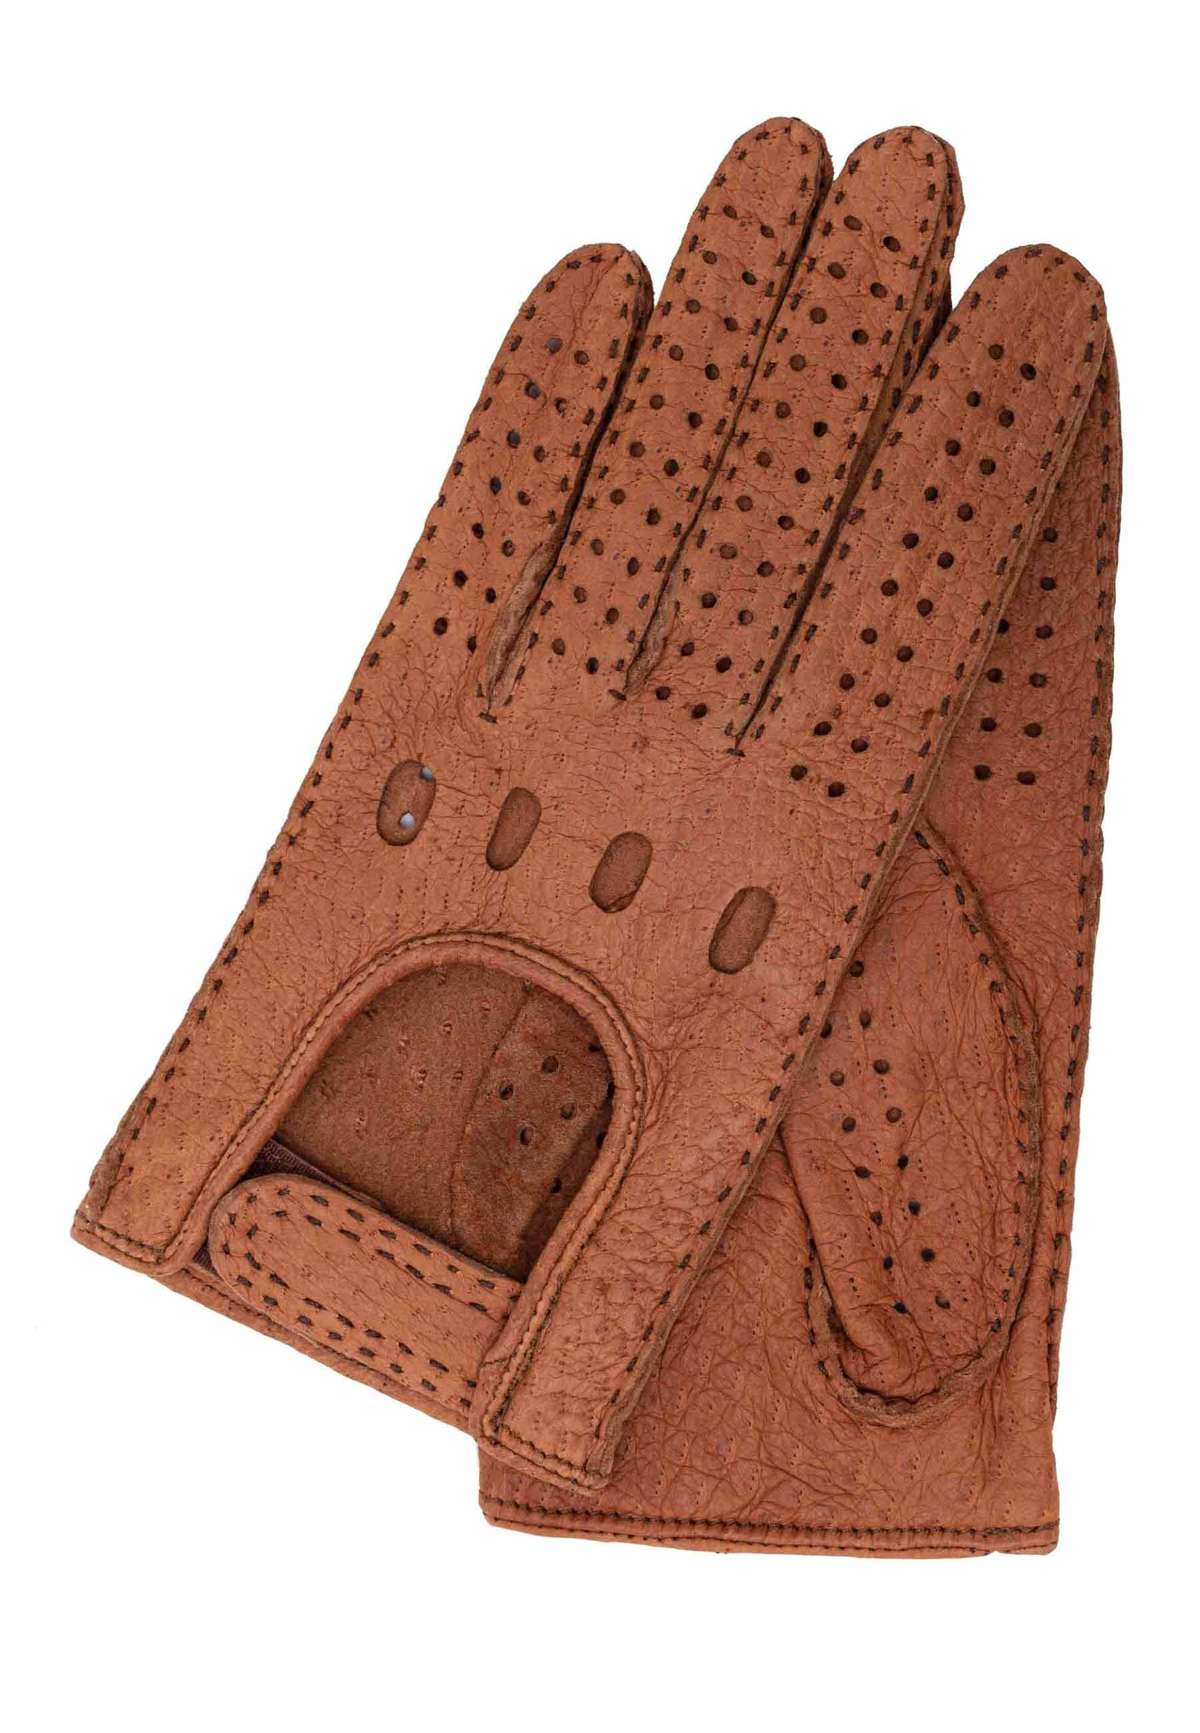 Кожаные перчатки в классическом дизайне автомобильных перчаток.